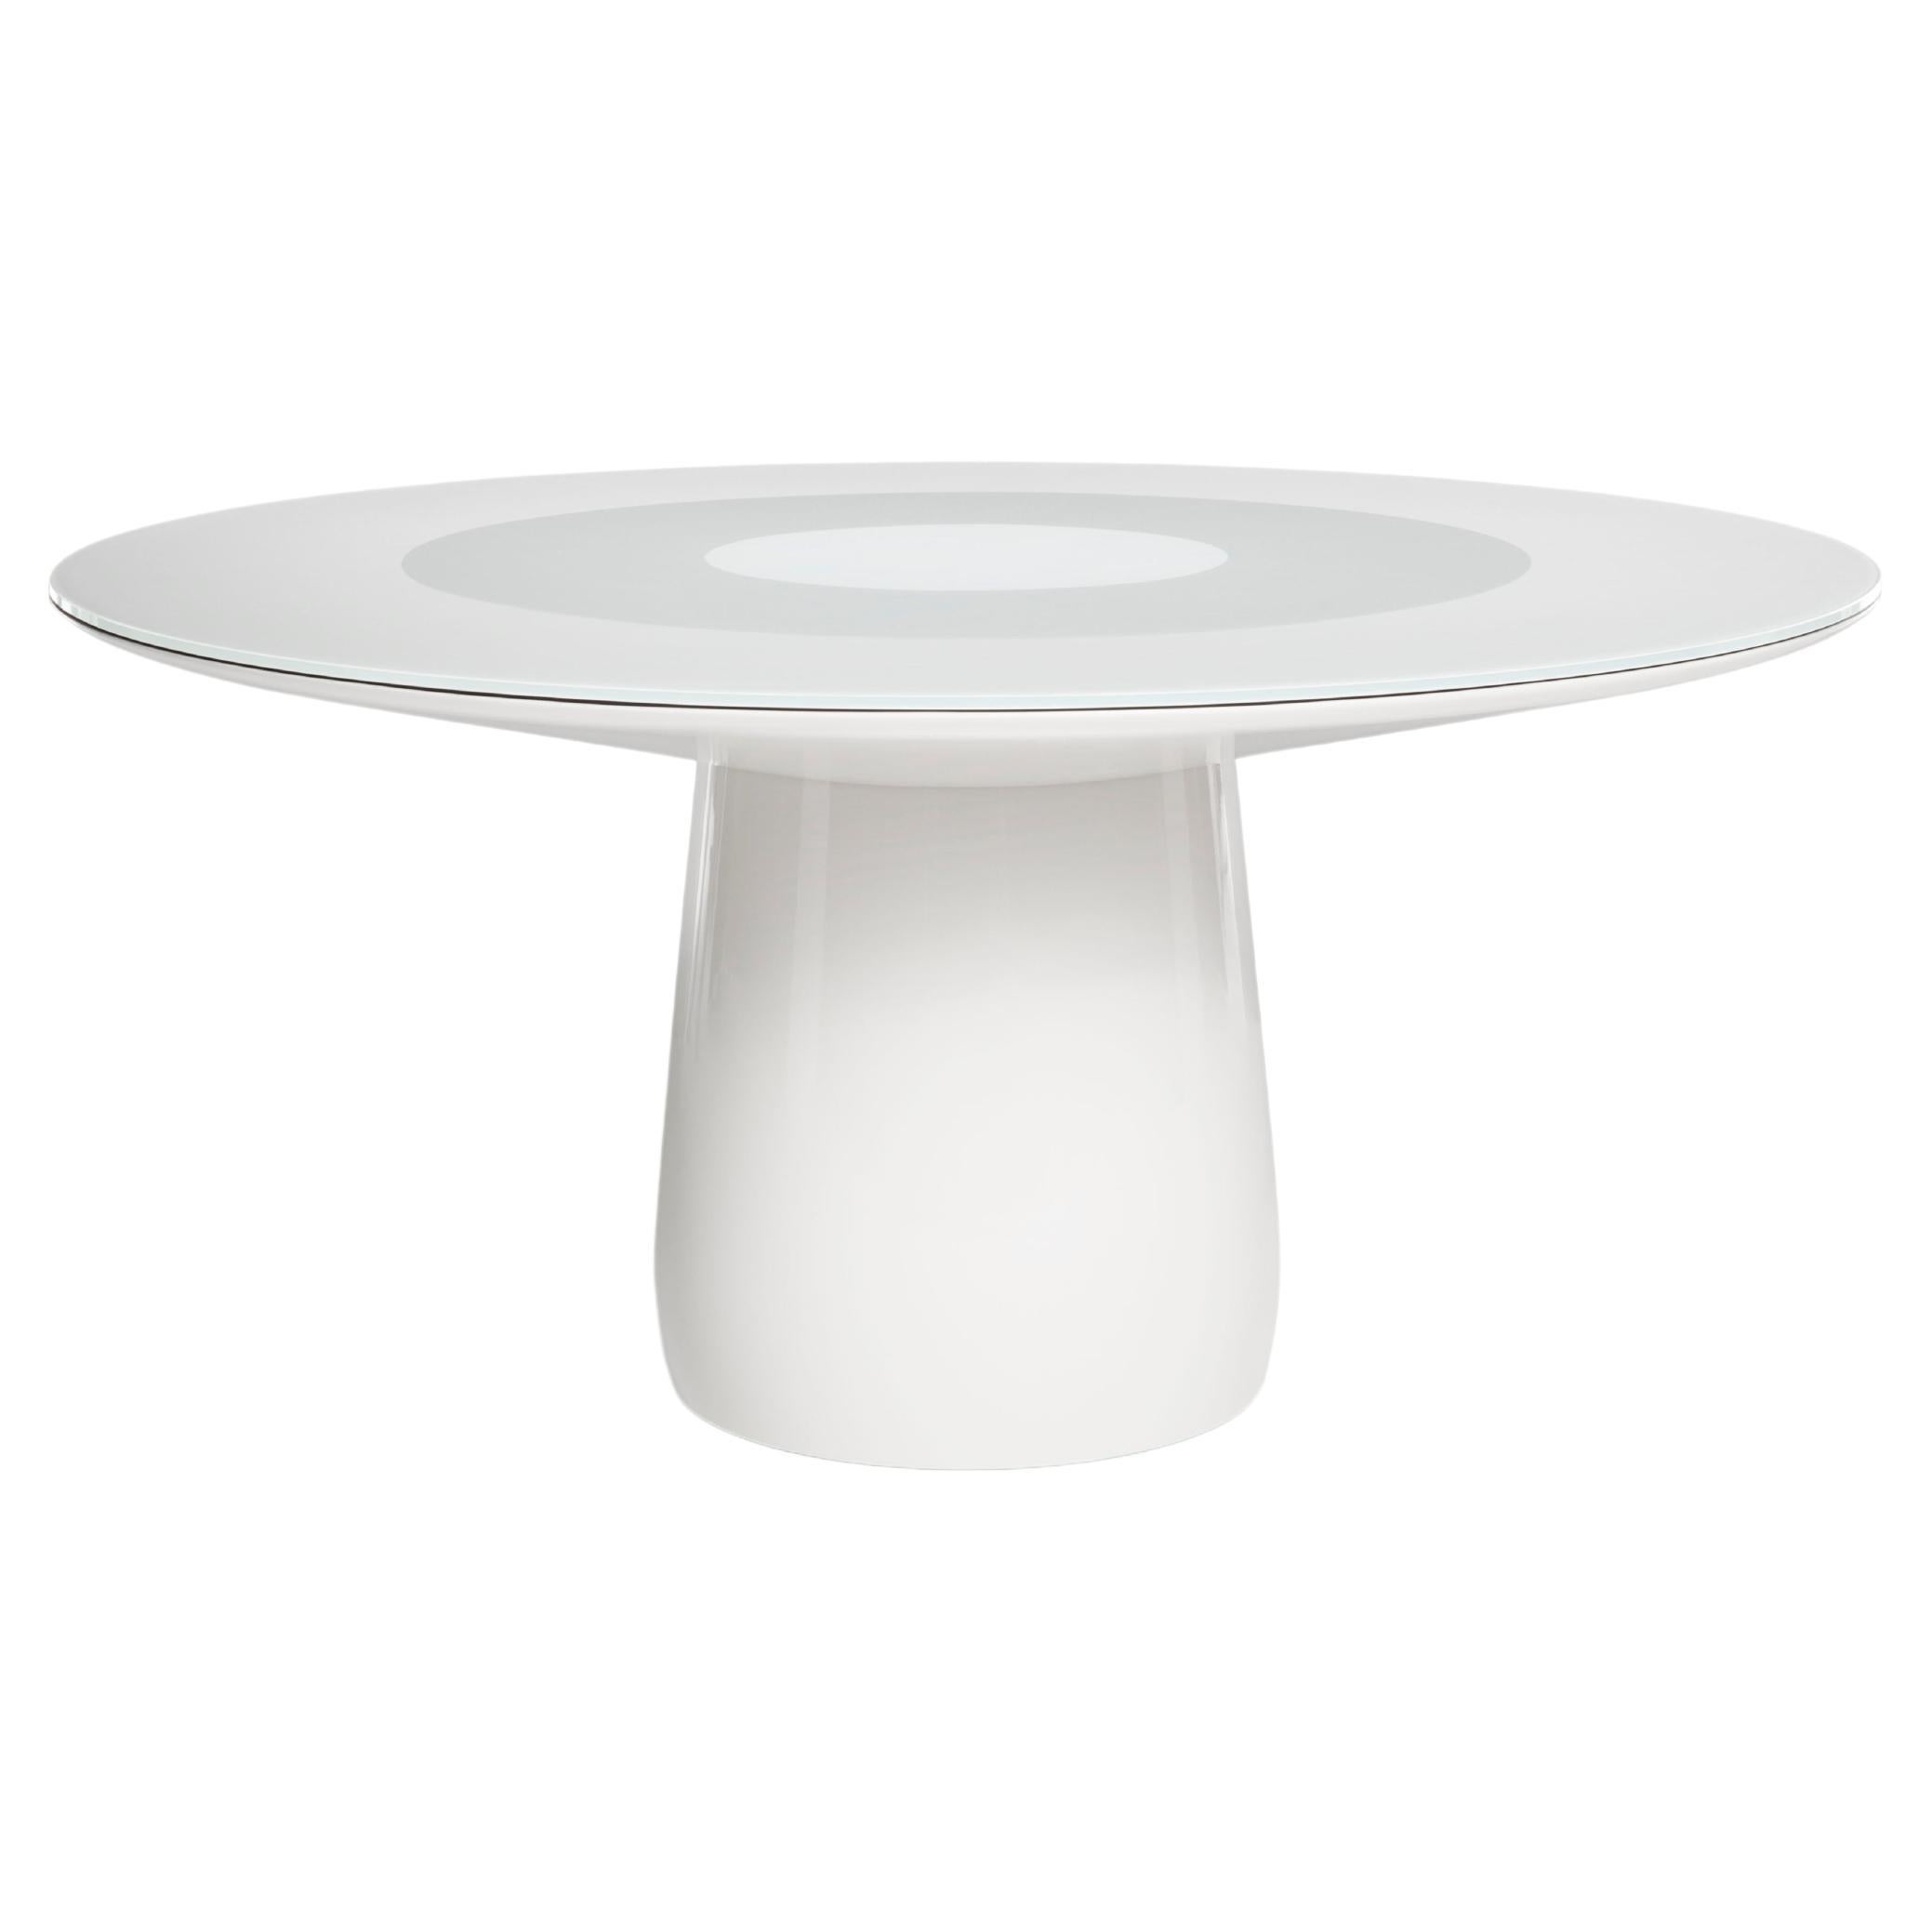 Runder Baleri Italia-Tisch mit weißer Glasplatte, Claesson Koivisto Rune